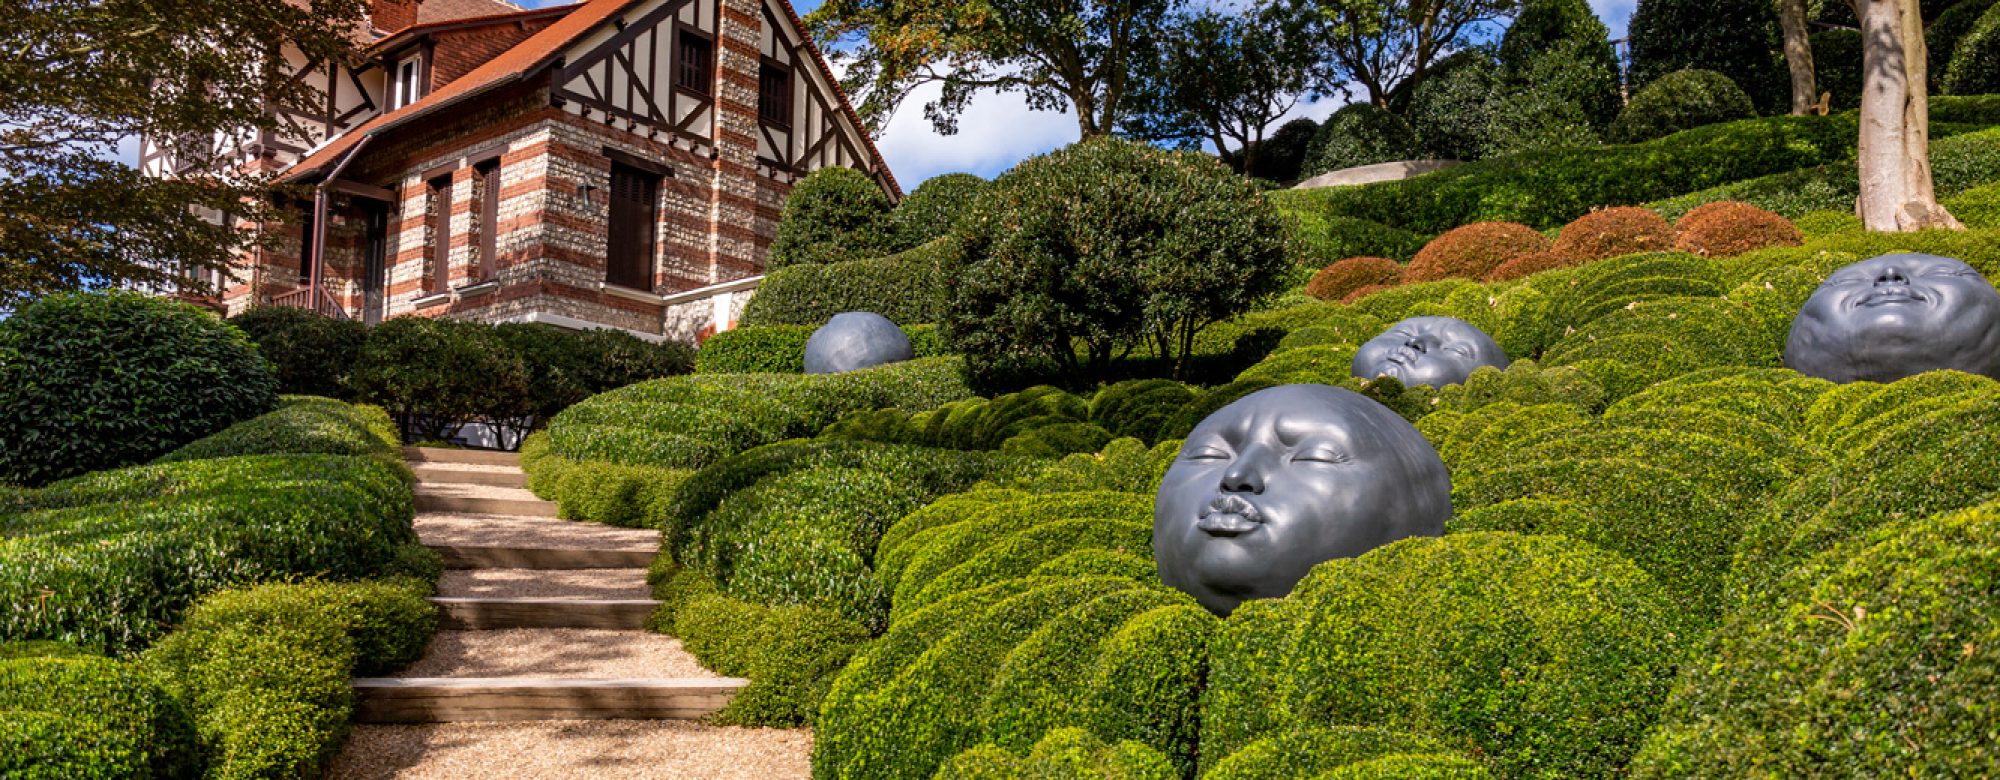 Le Jardin des Emotions, et la villa Roxelane dans les Jardins d'Etretat